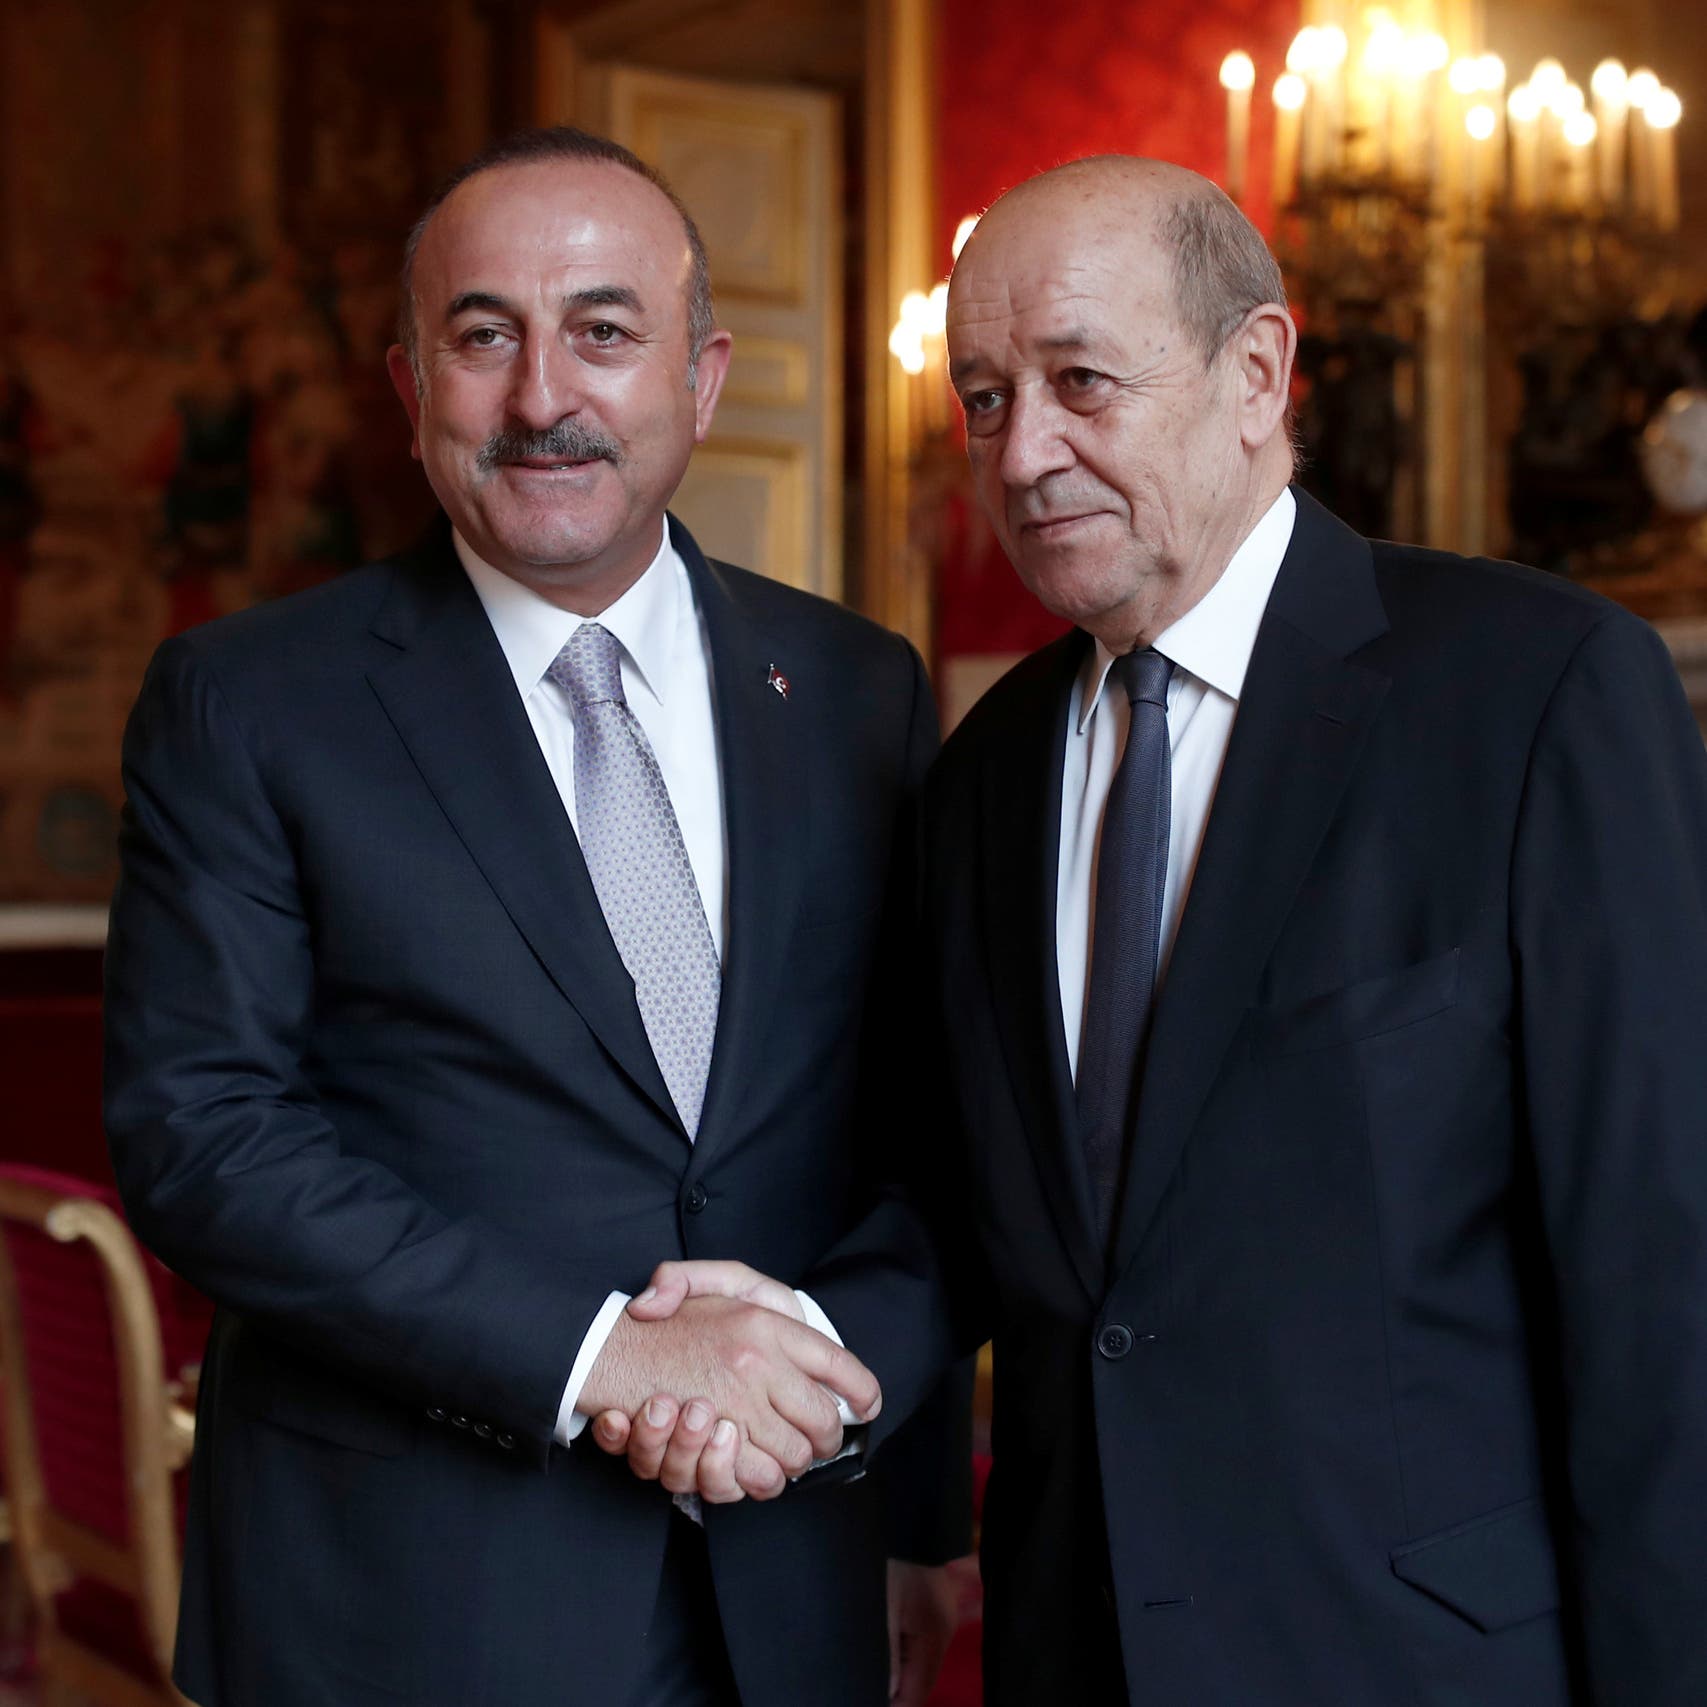 فرنسا تبلغ تركيا بضرورة توضيح مواقفها إذا أرادت علاقة بناءة 